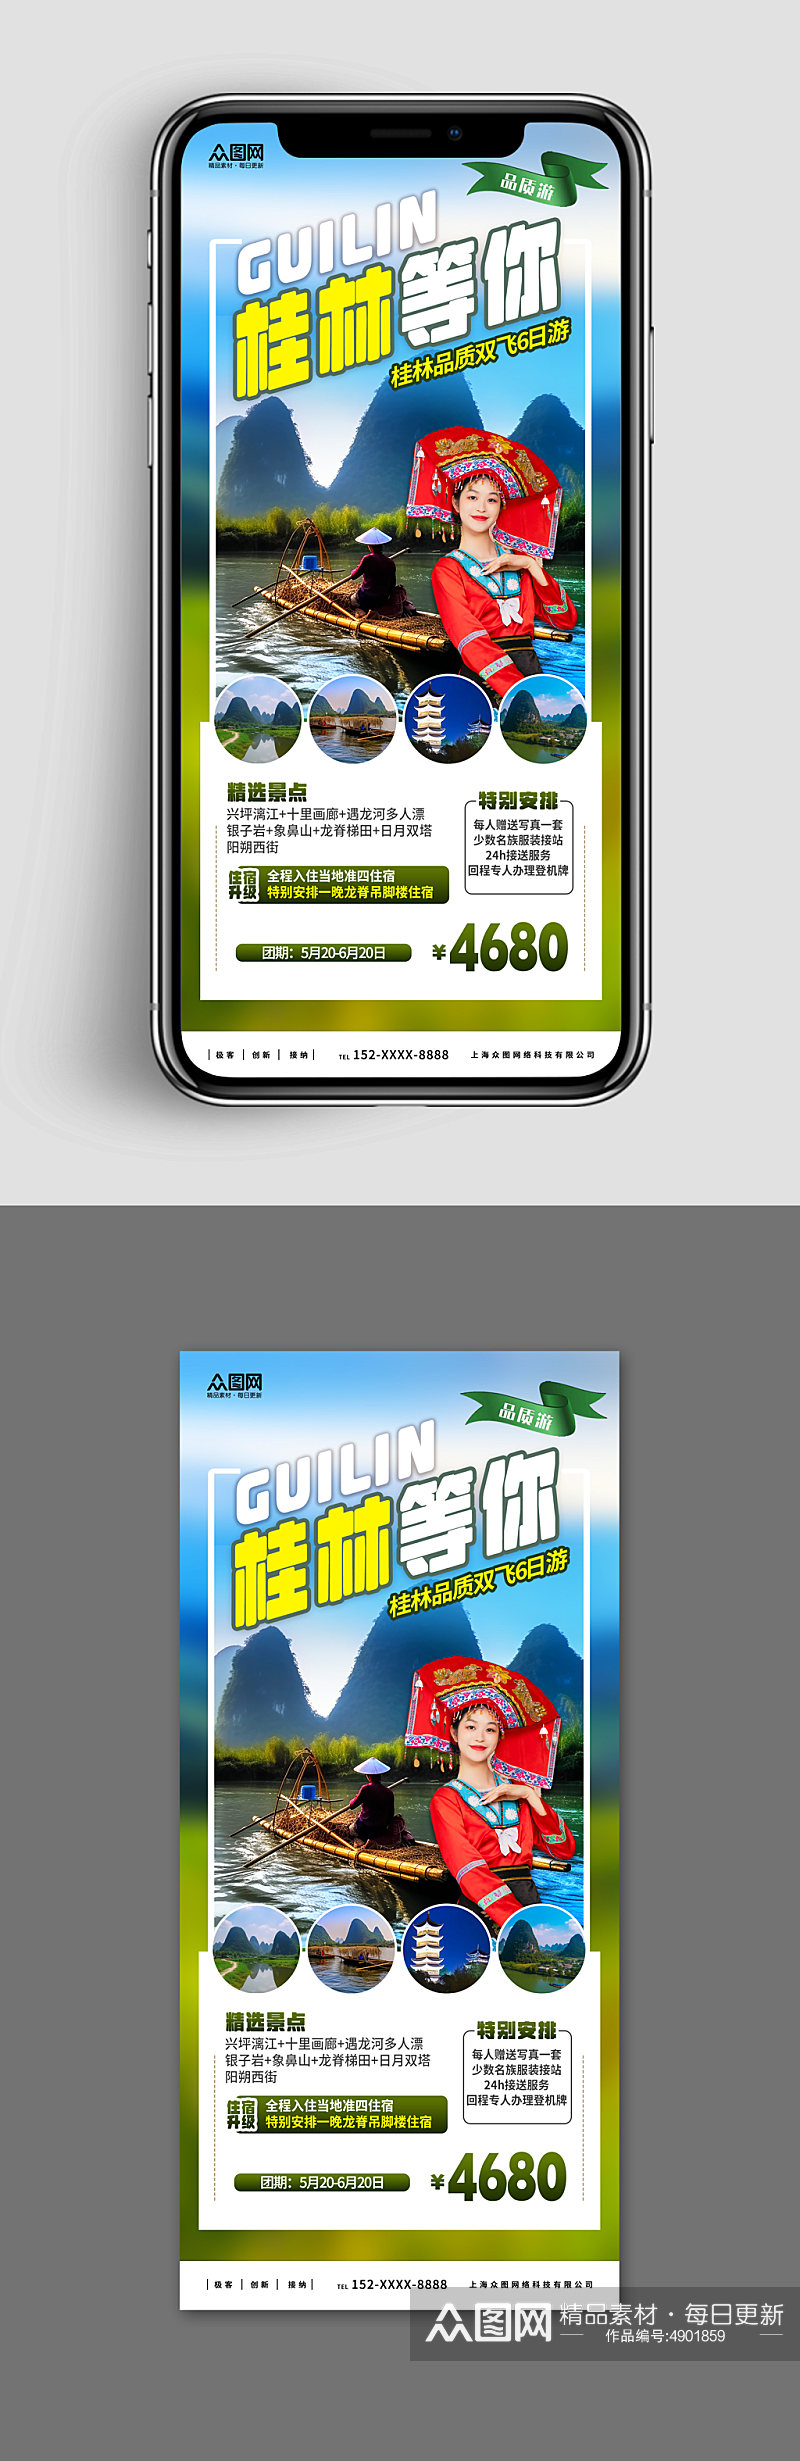 新媒体手机海报国内旅游广西桂林景点旅行社素材